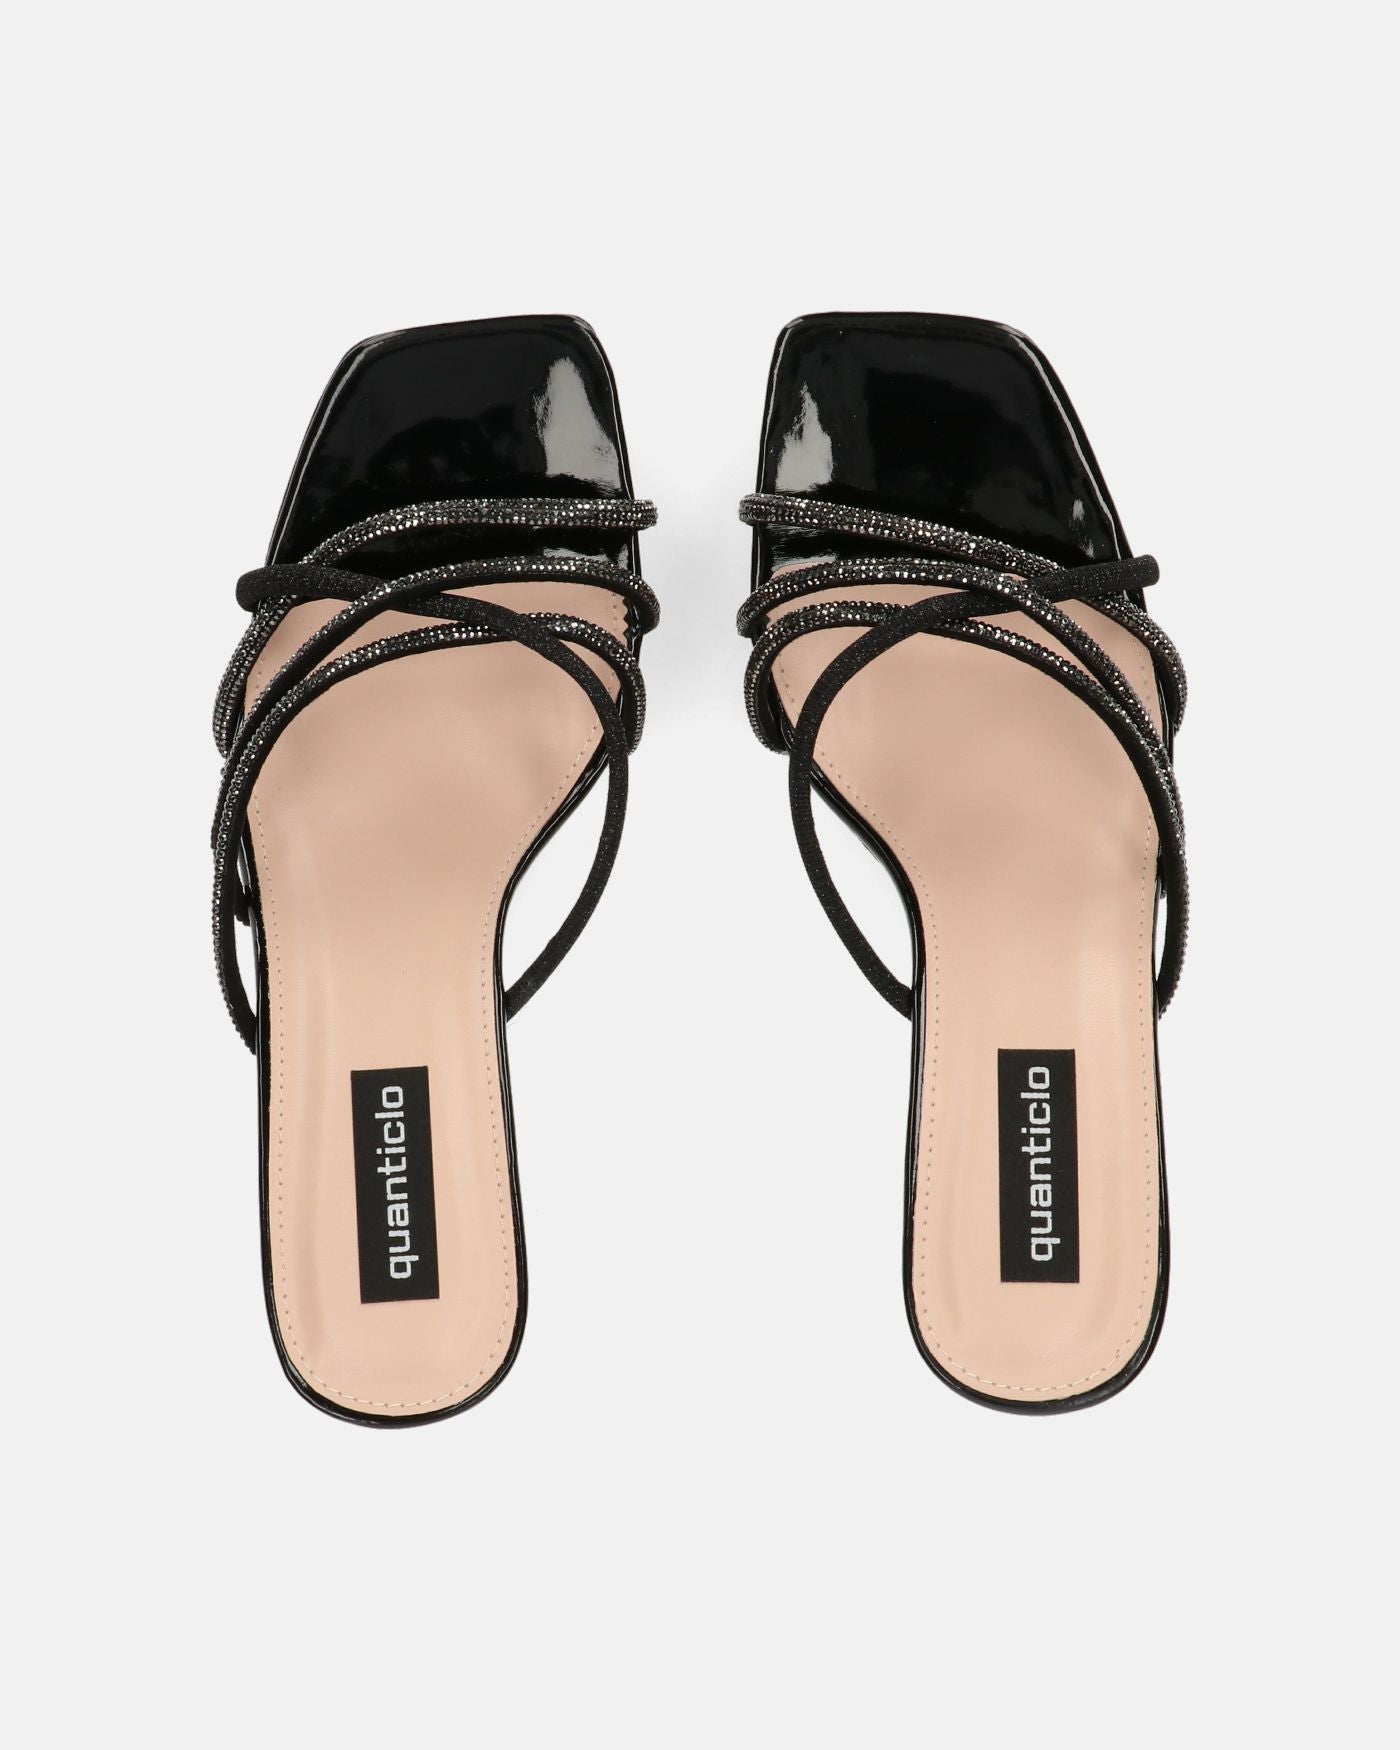 EVANTHI - zapatos de tacón en glitter negro